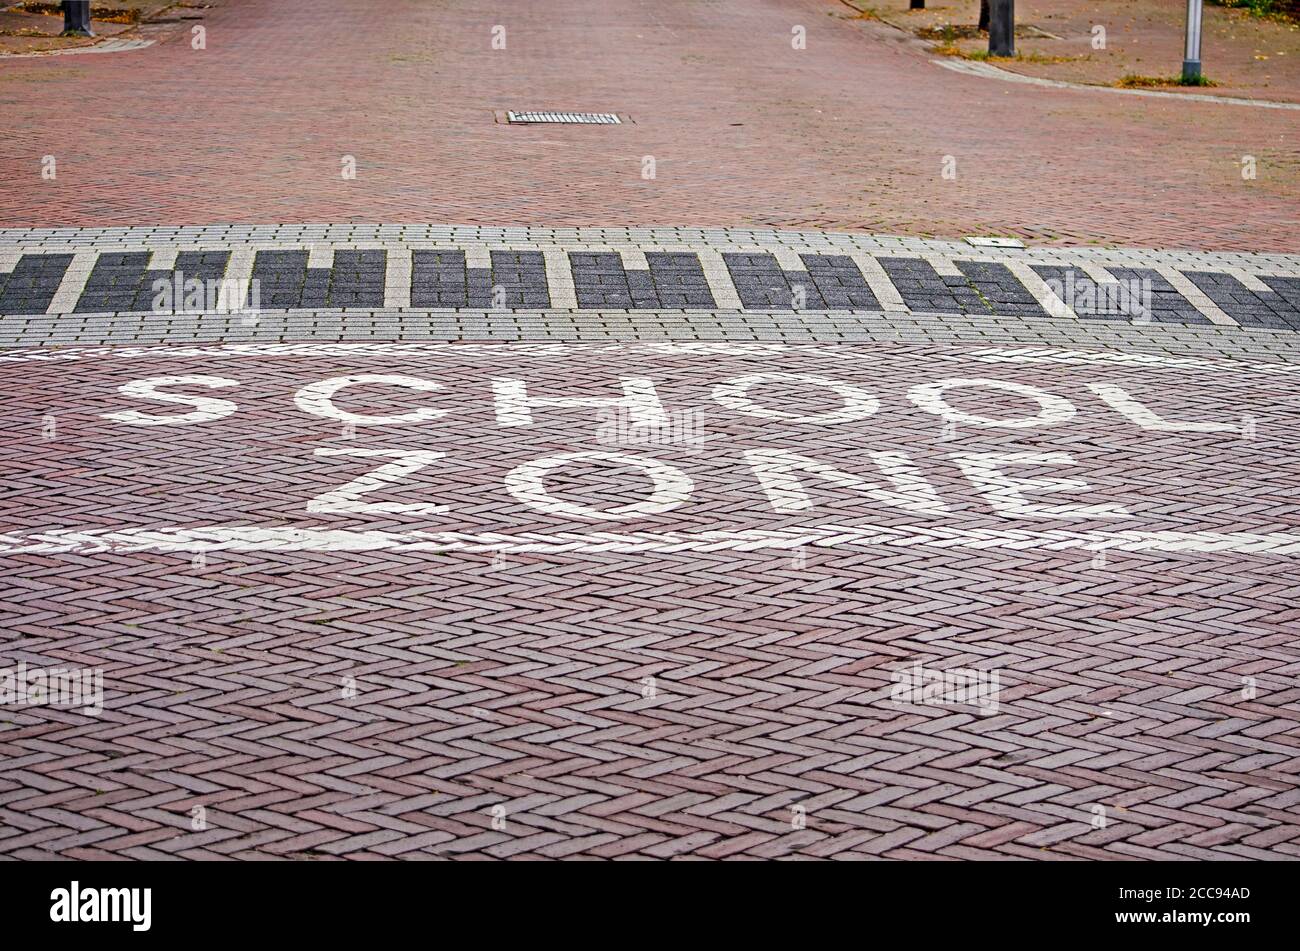 Le parole "zona sgabello" che si stancano in bianco su una strada in mattoni a wolle, nei Paesi Bassi, incoraggiano i conducenti a ridurre la velocità Foto Stock